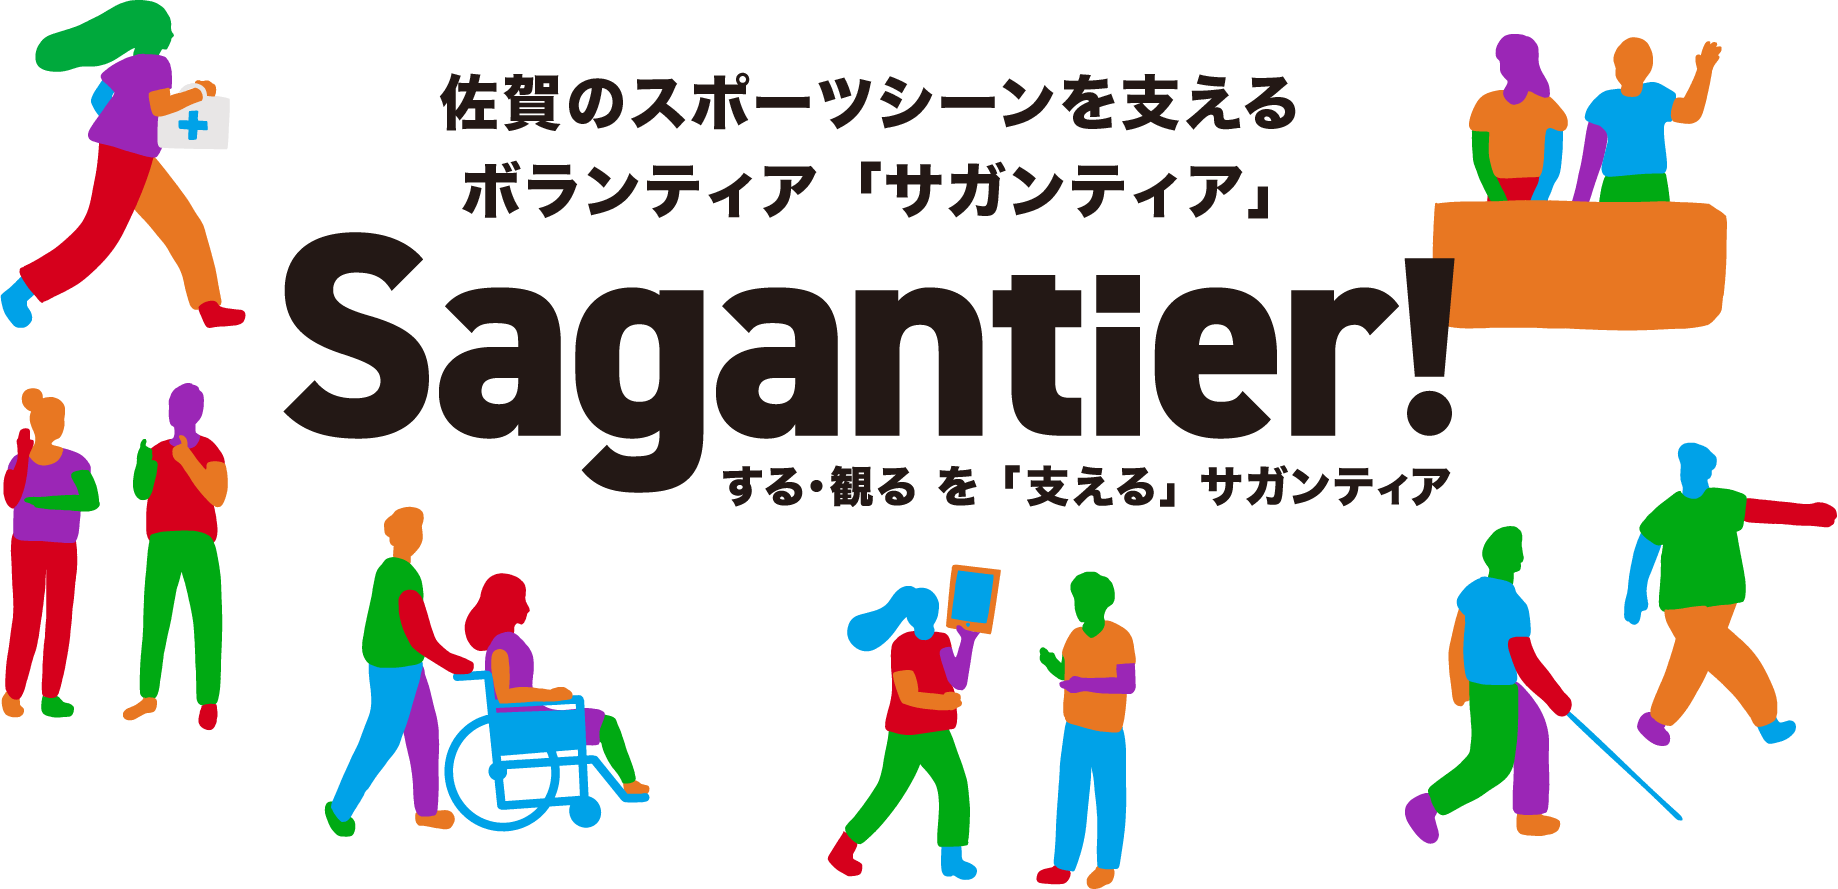 佐賀のスポーツシーンを支えるボランティア「サガンティア」Sagantier!する・観るを「支える」サガンティア